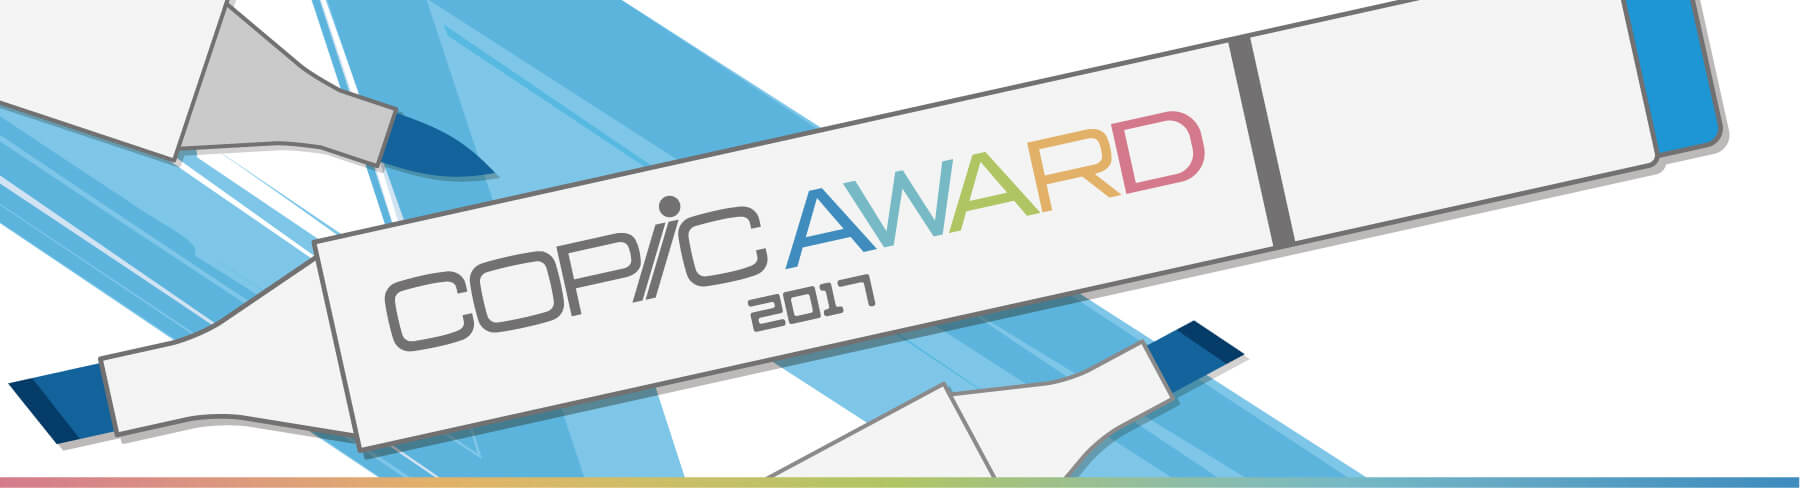 COPIC AWARD 2017 - 世界中のコピックファンを作品でつなぎ、コピックでの作画・制作をより楽しく